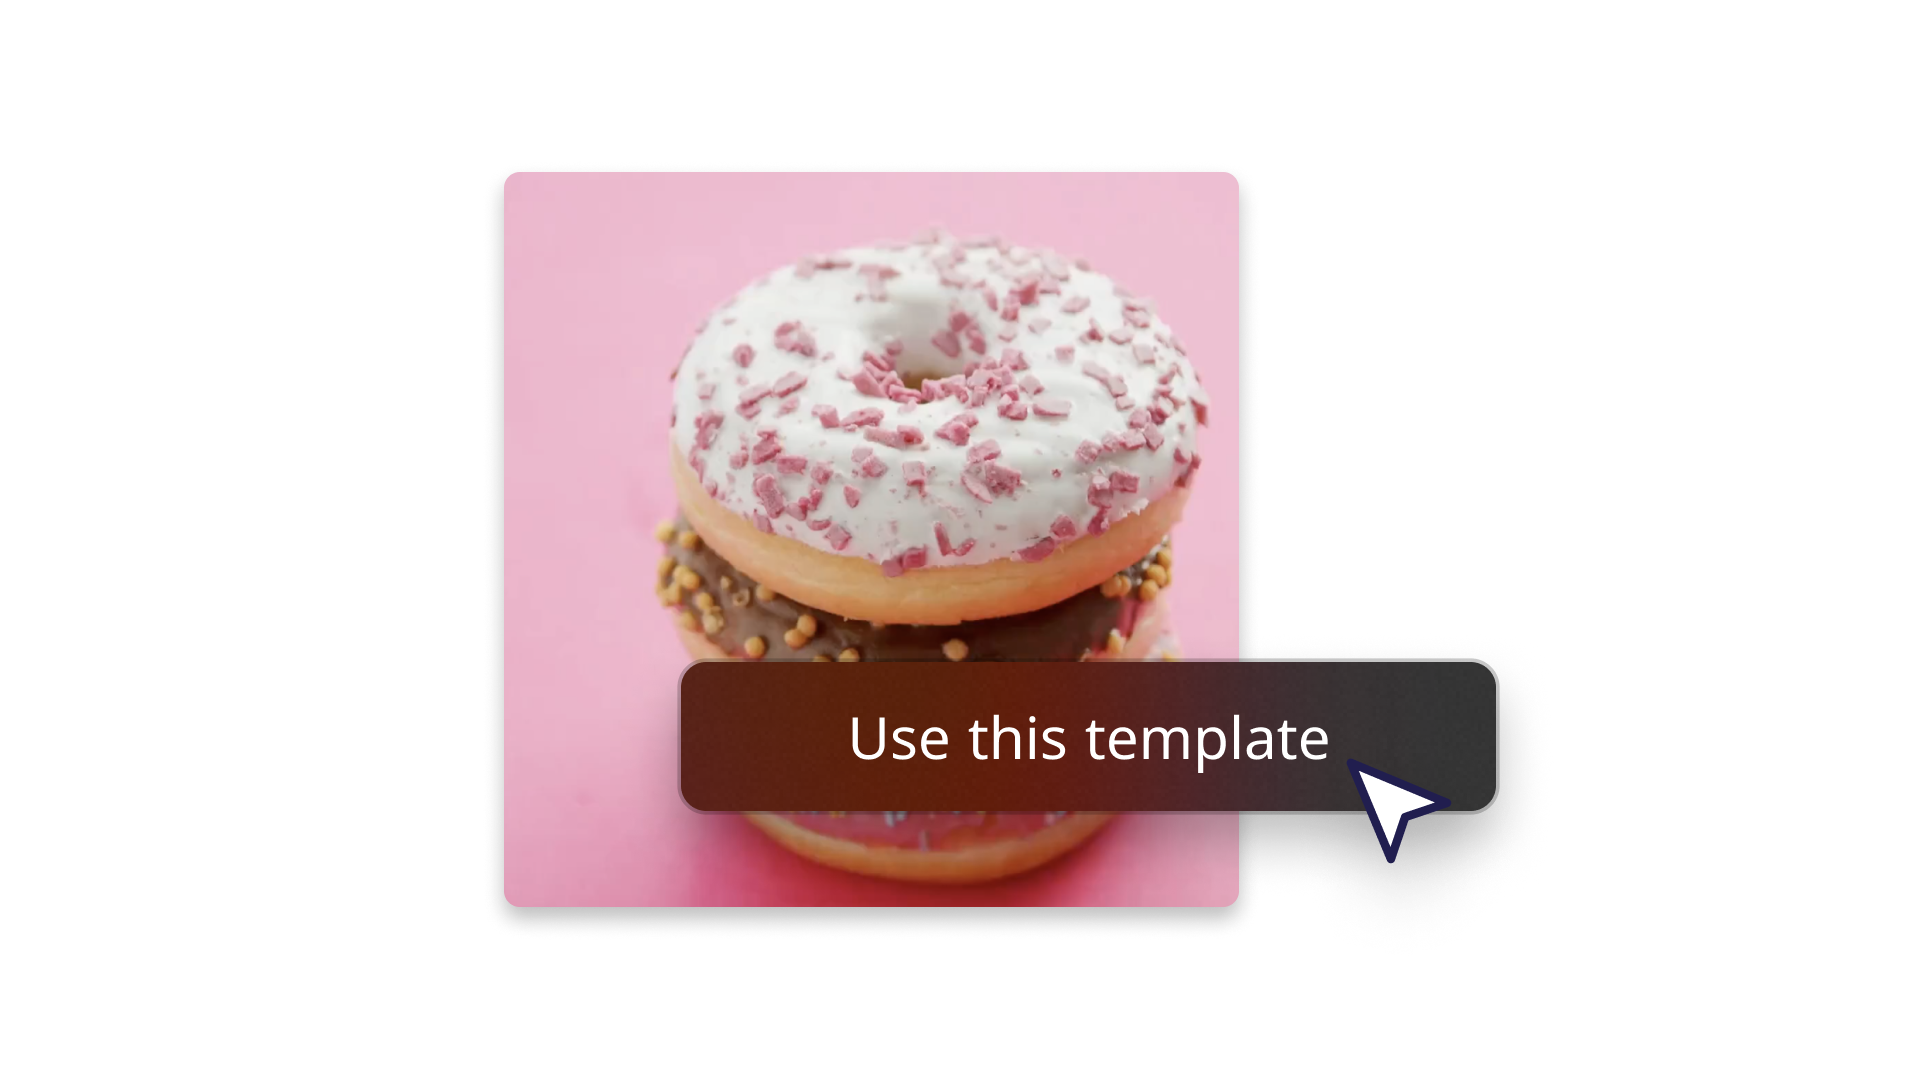 Imagem abstrata em que um donut demonstra como usar um modelo 